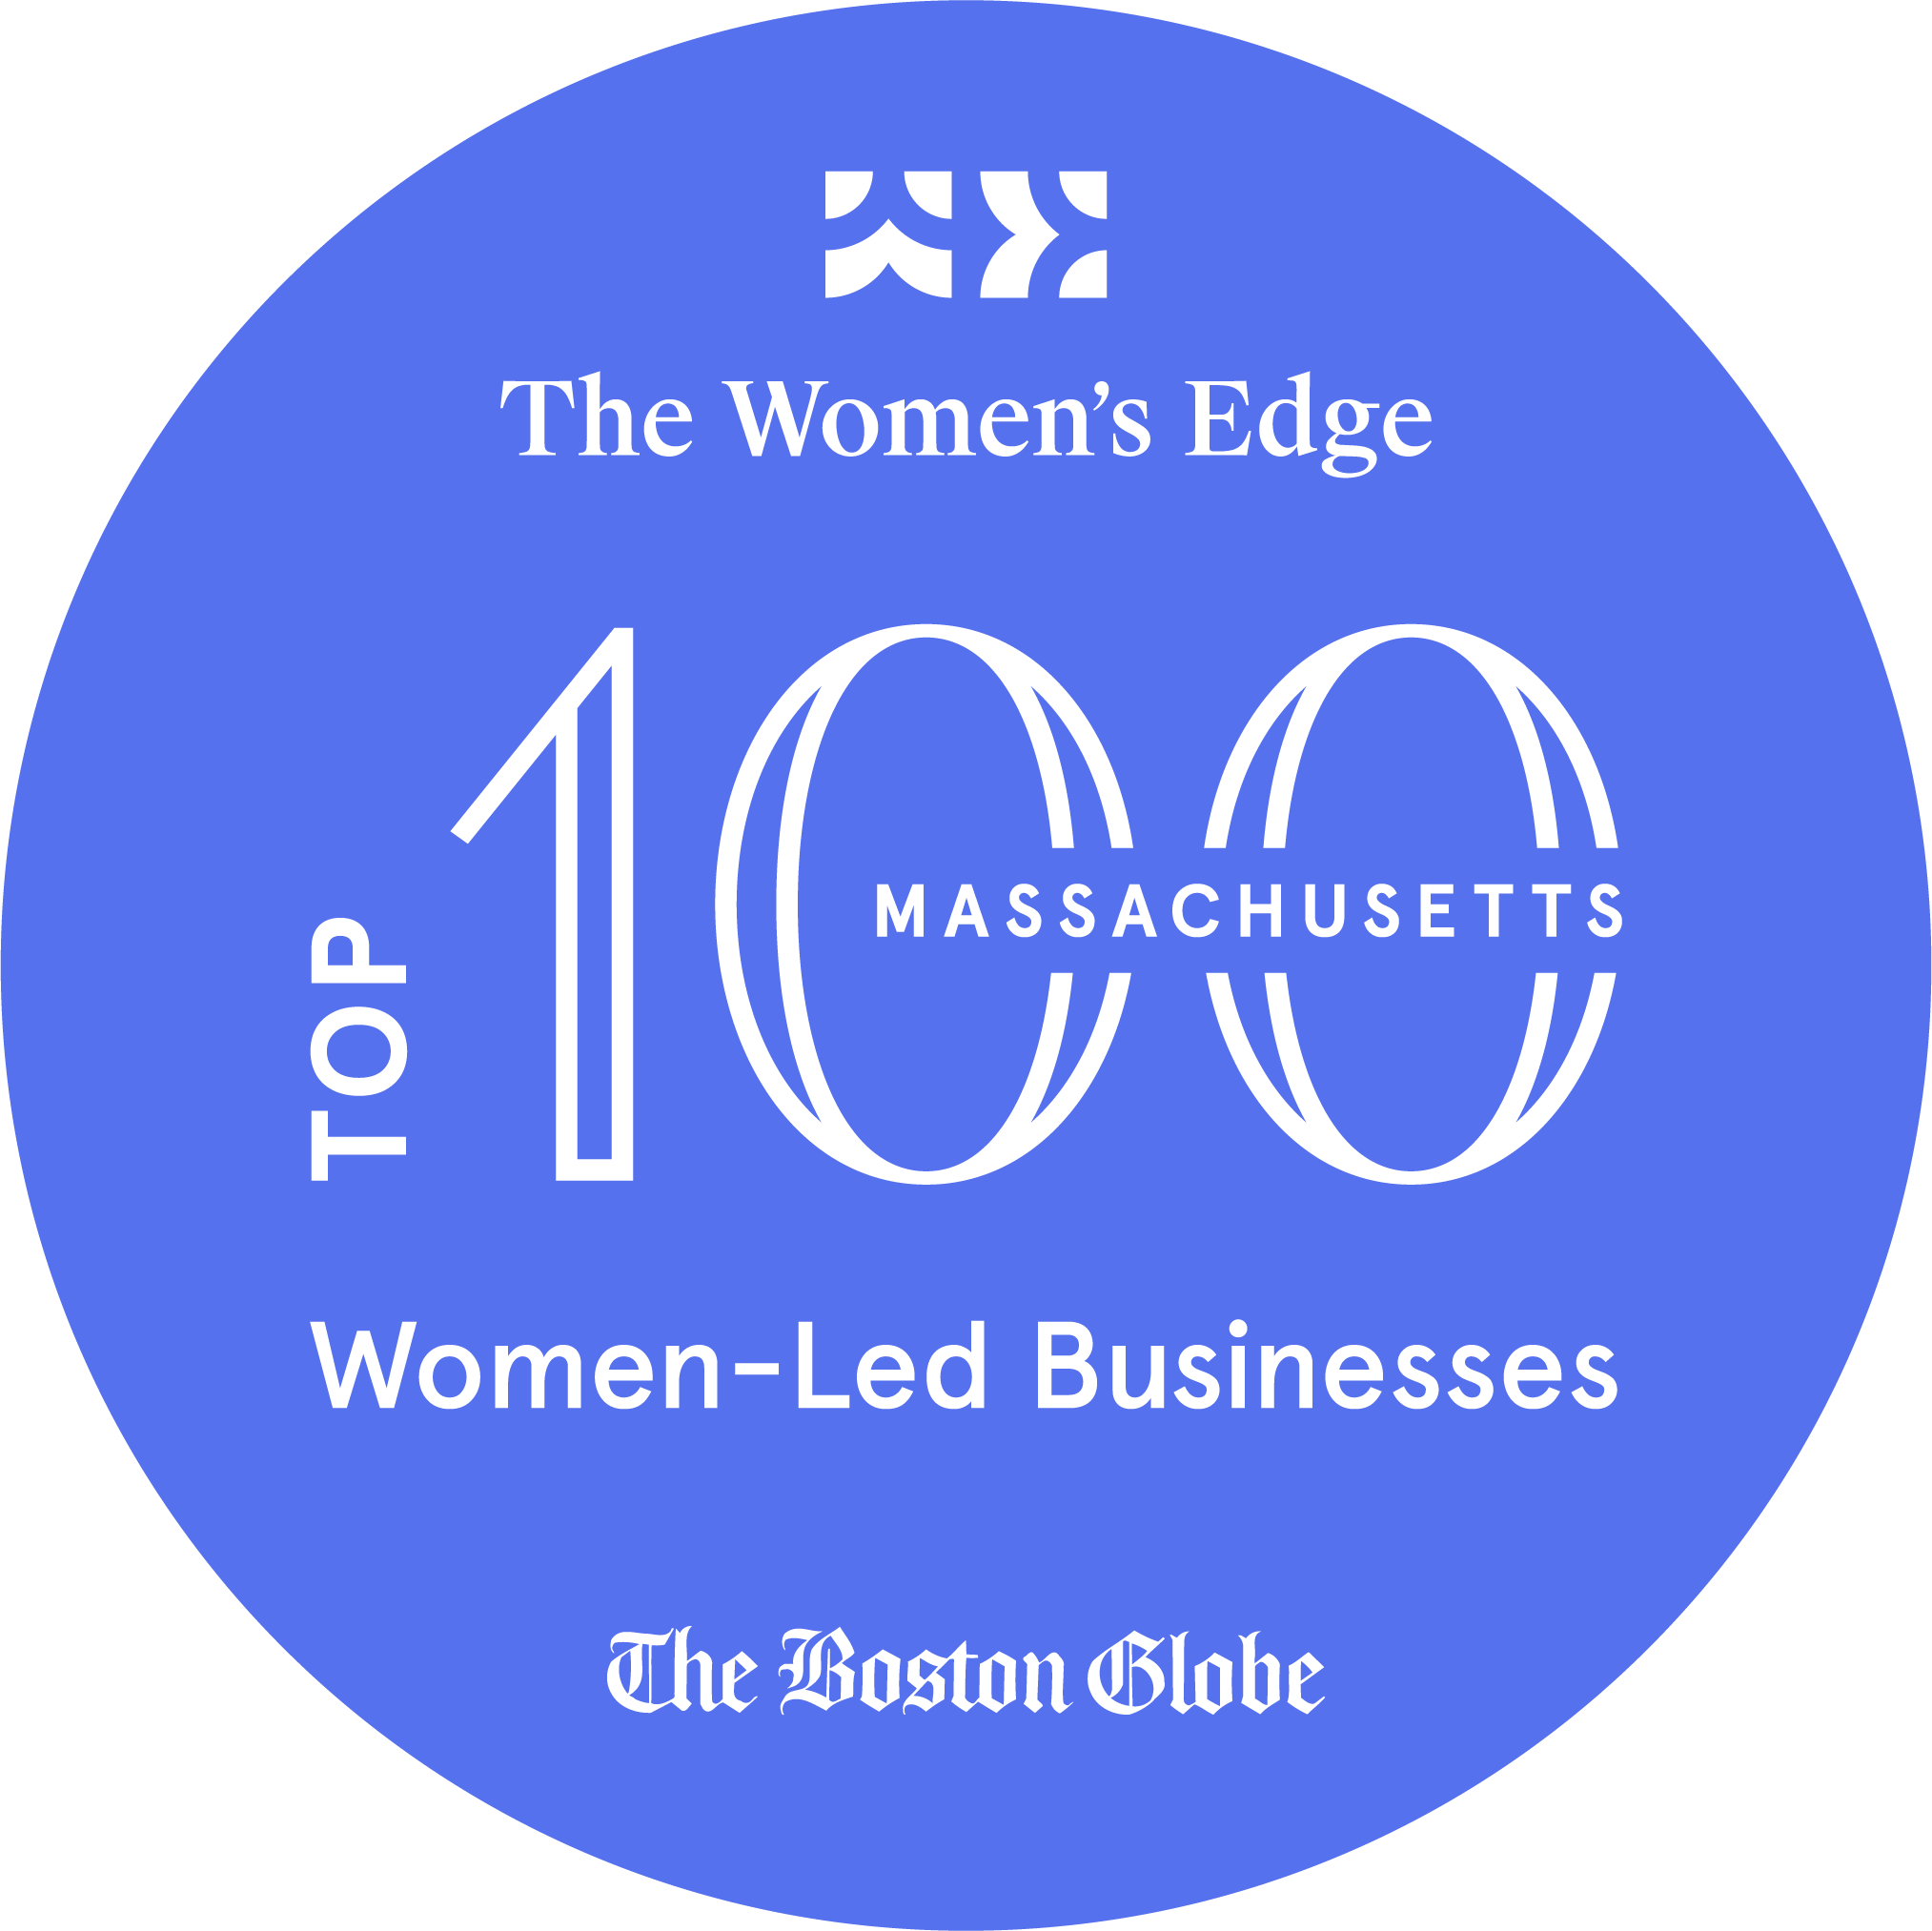 波士顿环球报和Women's Edge百强女性领导的企业